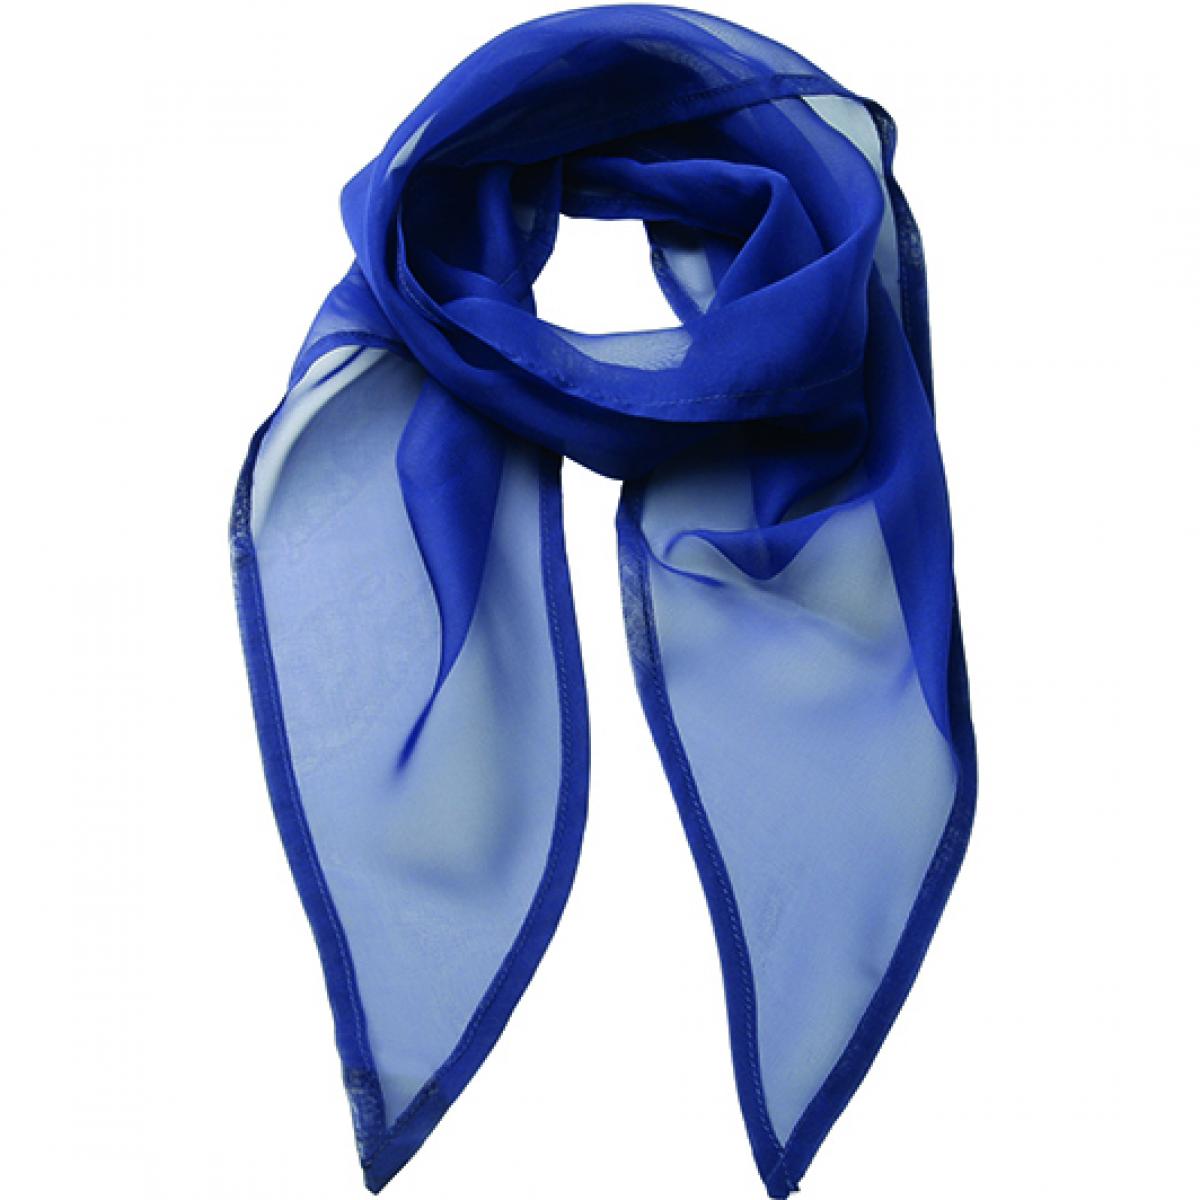 Hersteller: Premier Workwear Herstellernummer: PR740 Artikelbezeichnung: Schal Women`s Colour Chiffon Scarf - 98 x 16,5 cm Farbe: Marine Blue (ca. Pantone 281)